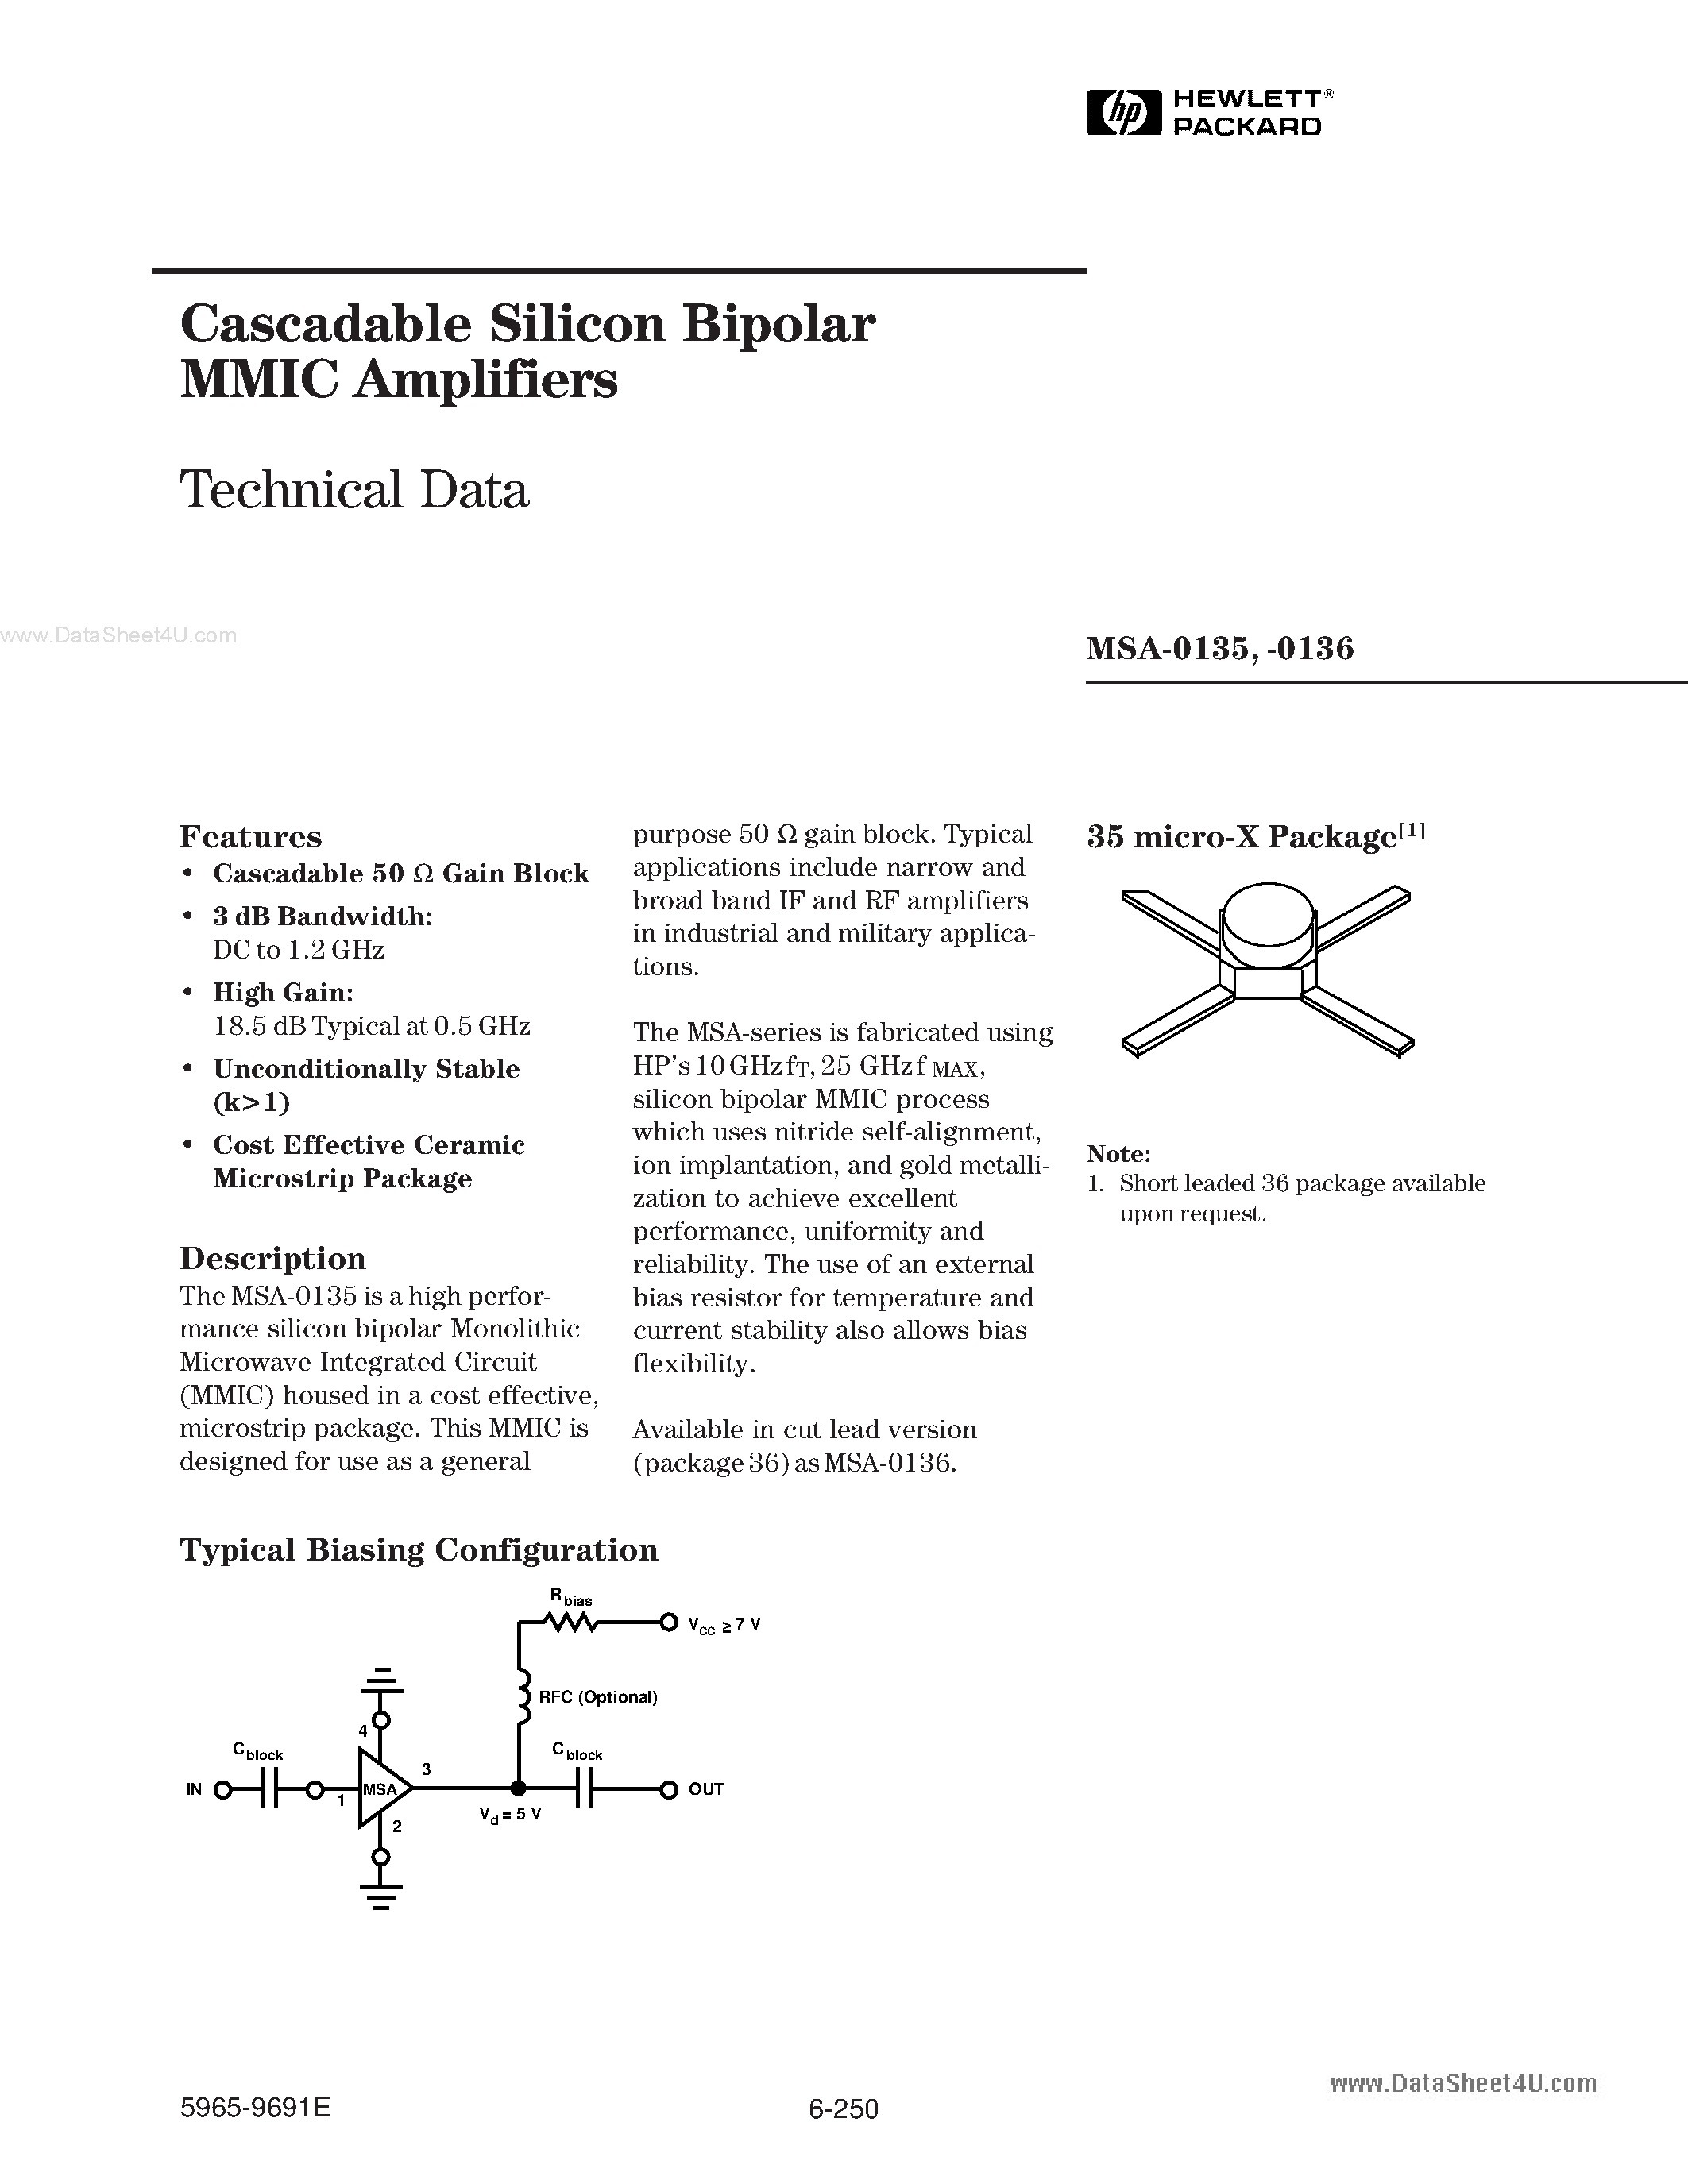 Даташит MSA-0135-(MSA-0135 / MSA-0136) Cascadable Silicon Bipolar MMIC Amplifier страница 1